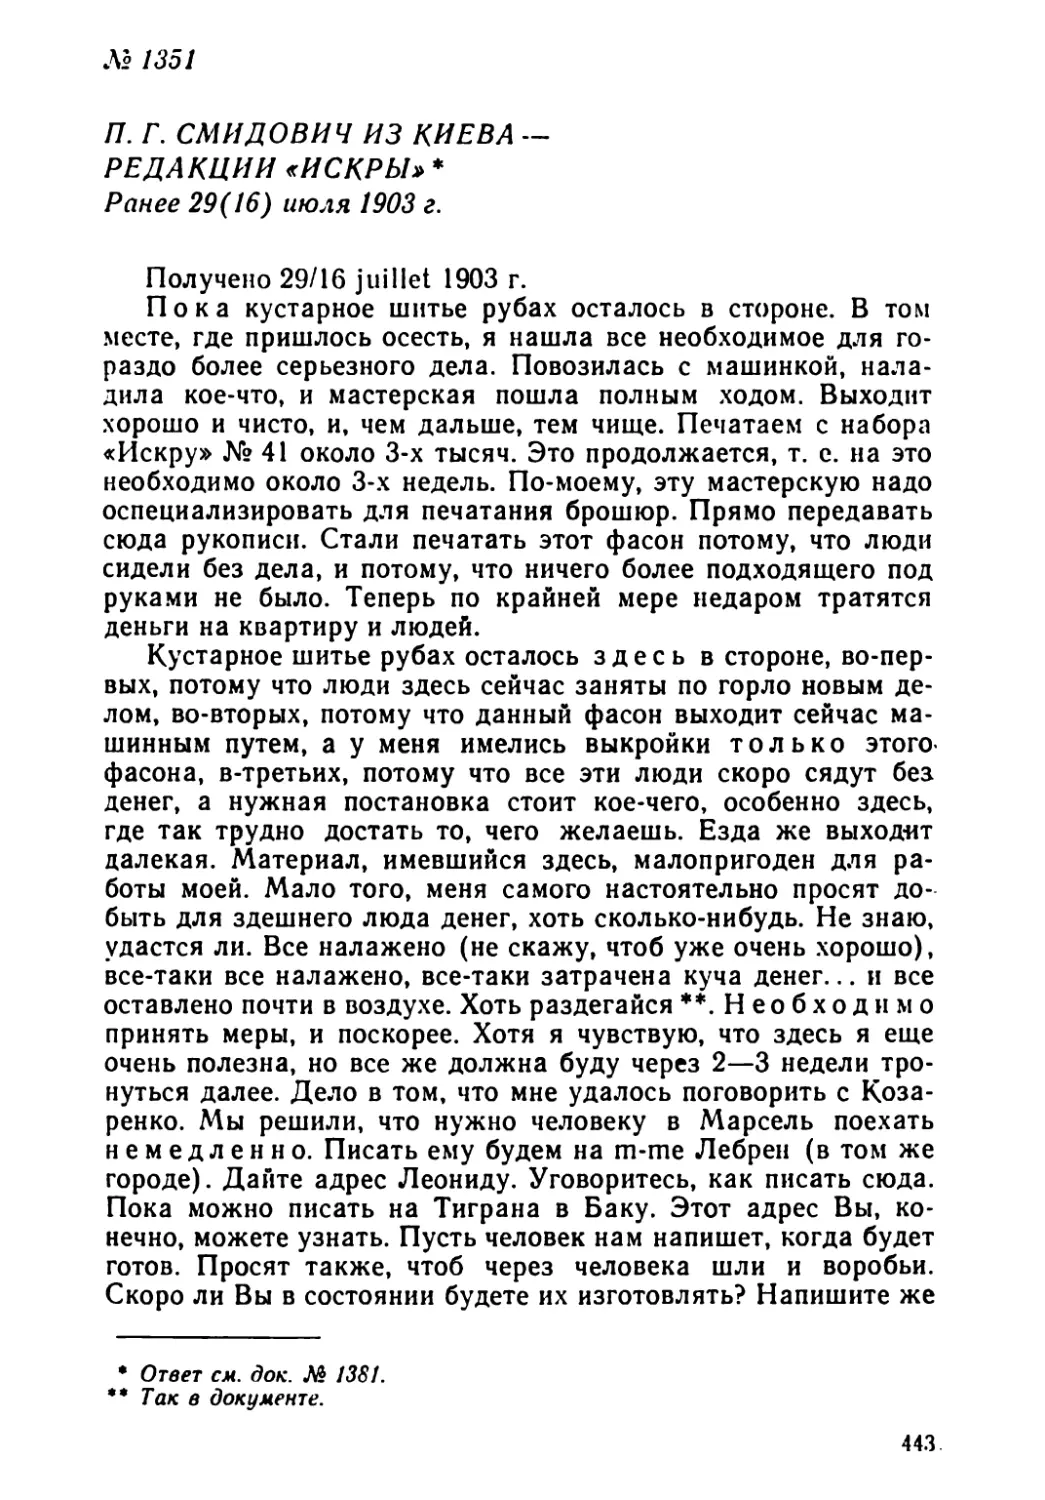 № 1351 П. Г. Смидович из Киева — редакции «Искры». Ранее 29 июля